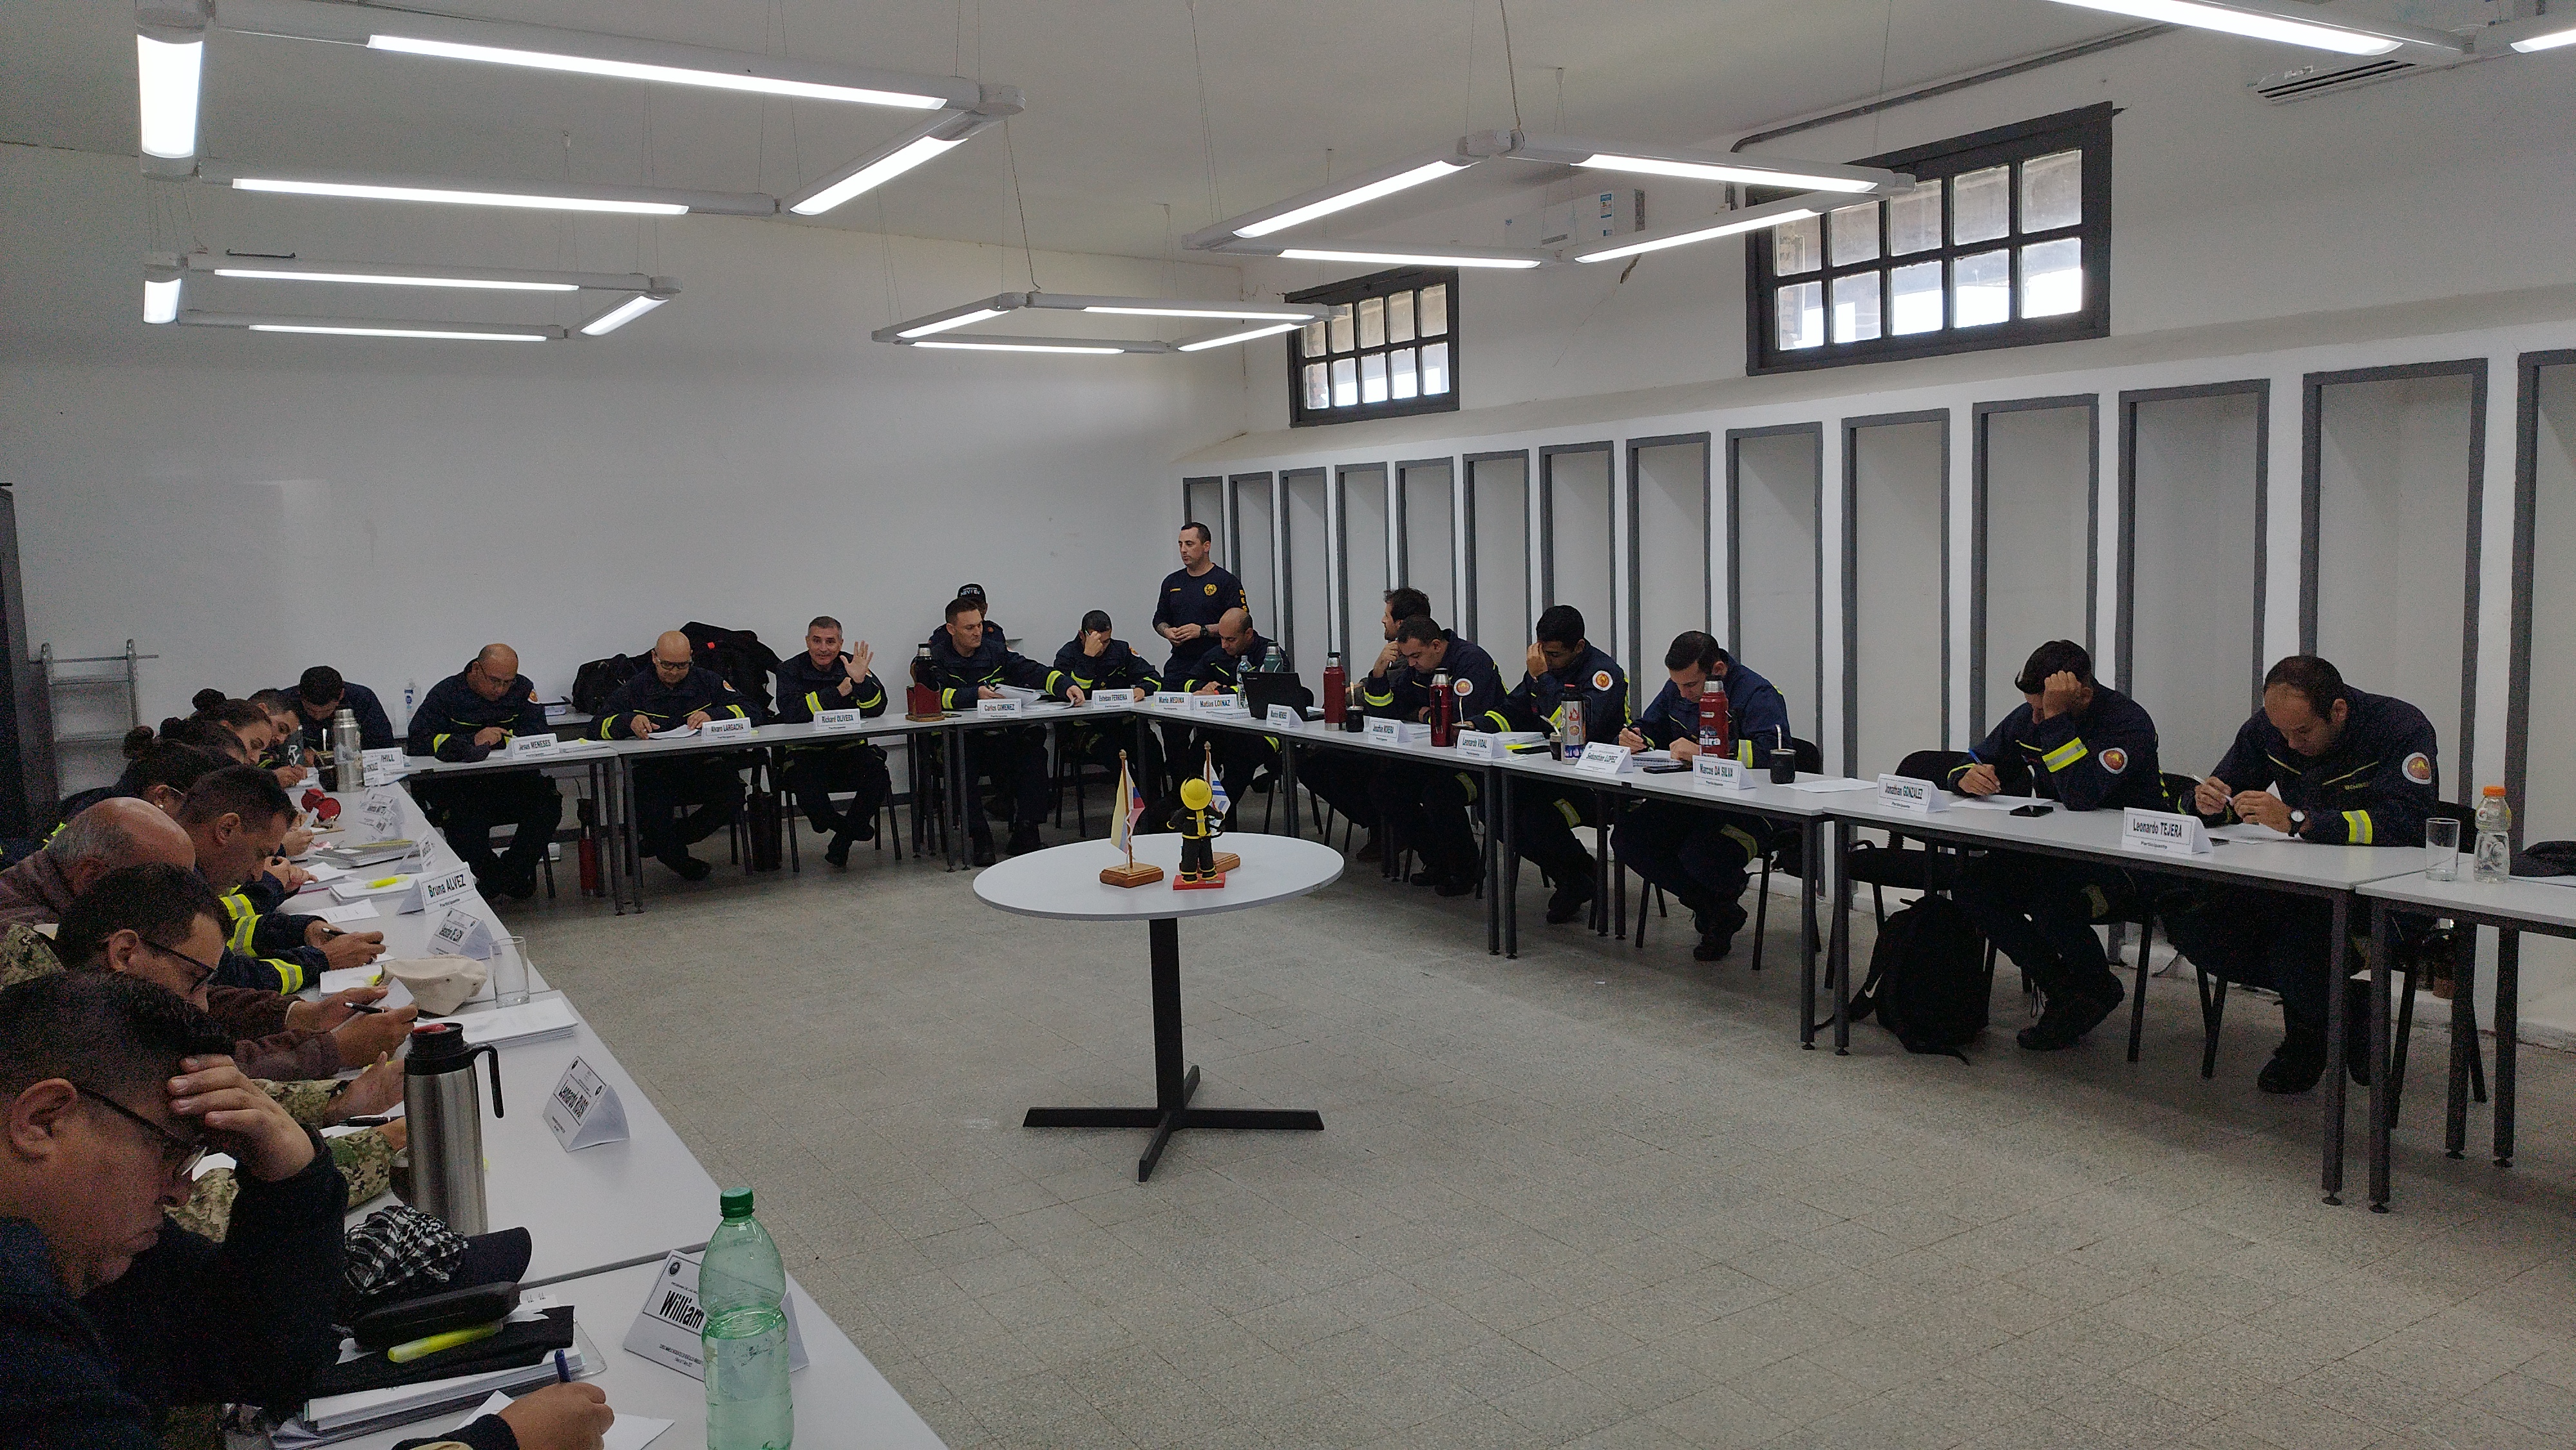 IMG_20230511_120945.jpg - El pasado jueves 11 de mayo culminó la &#034;Capacitación para bomberos sobre manejo de incidentes relacionados con la movilidad eléctrica&#034; en donde se capacitaron a 25 bomberos en la Base Aérea de Santa Bernardina del departamento de Durazno. Esta capacitación es la continuación del primer curso regional que organizó la plataforma MOVE del Programa de la Naciones Unidas para el Medio Ambiente a finales de 2022 en Paraguay, donde participaron y se formaron dos bomberos instructores de Uruguay.